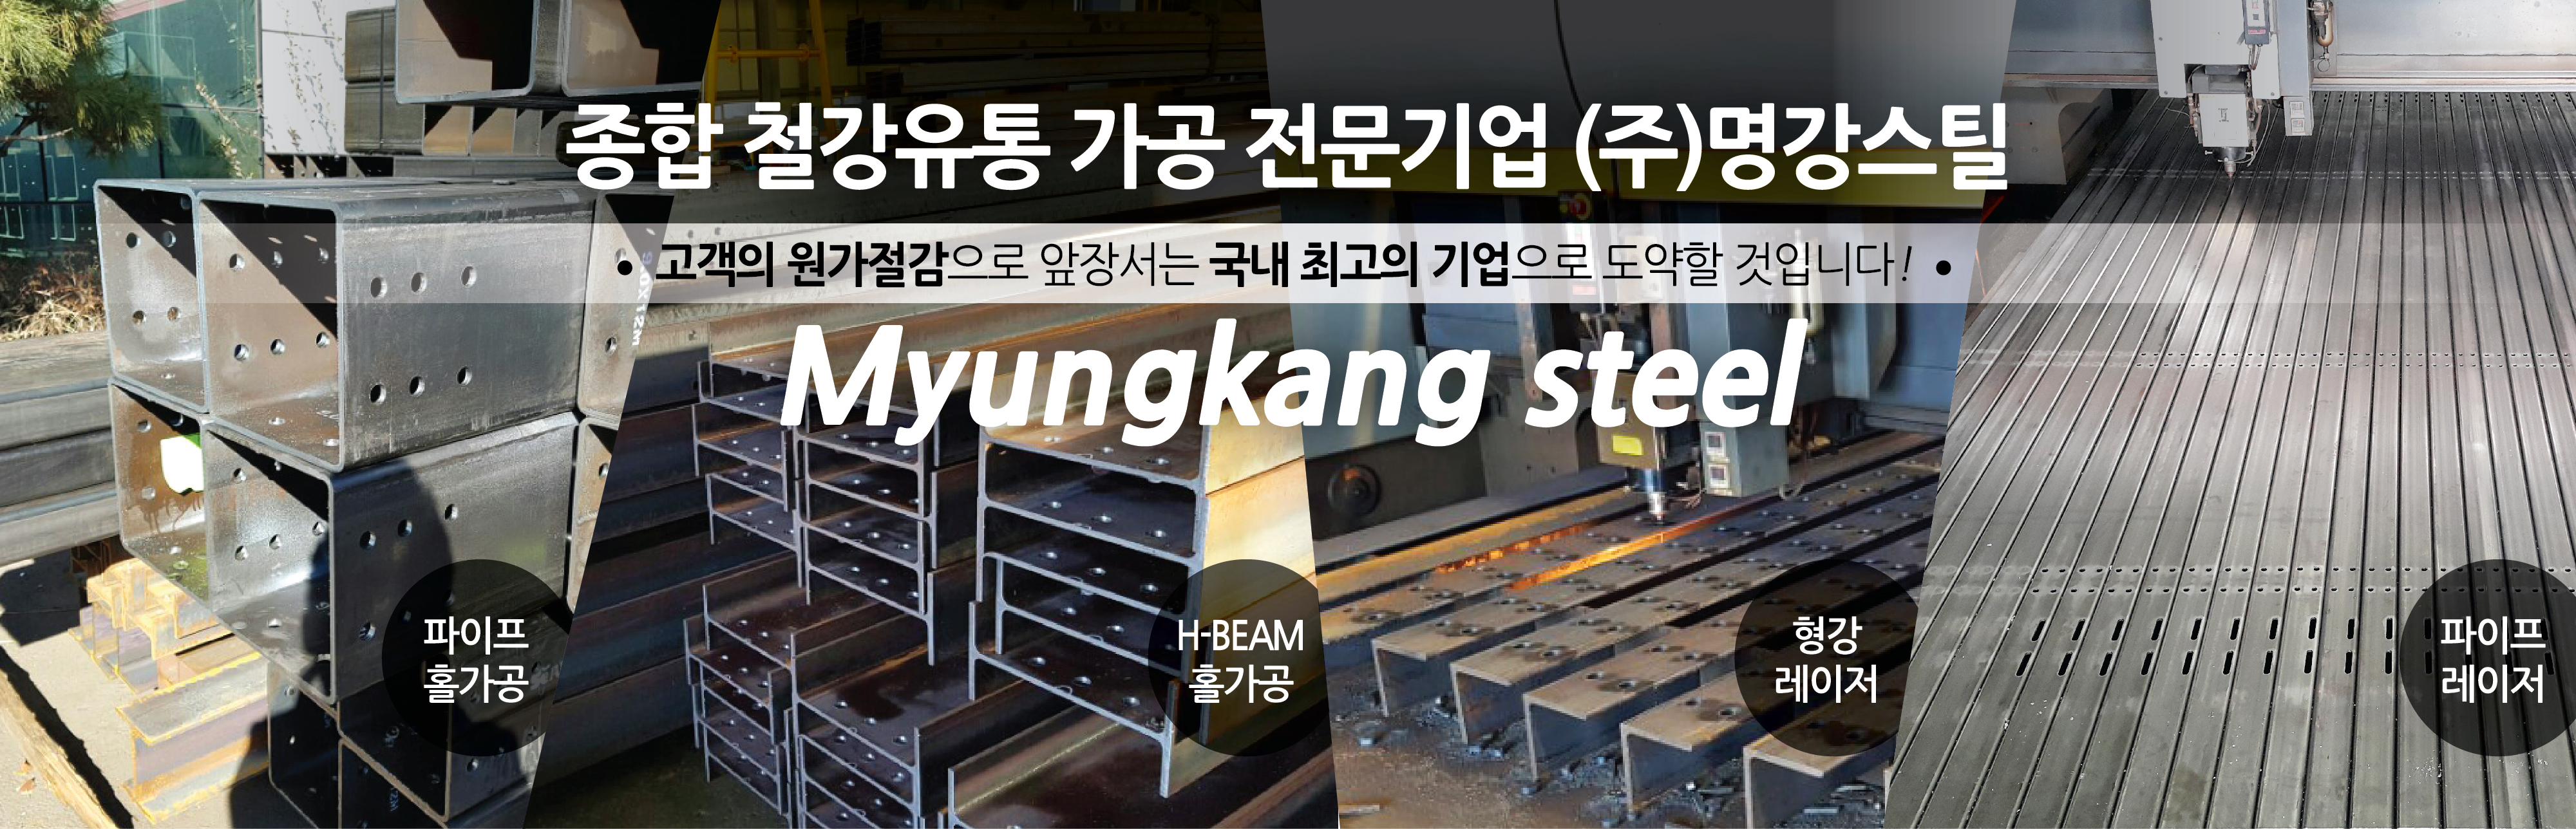 철강전문기업 명강스틸 주식회사 경인을 넘어 국내최고의 철강유통업체로 도약할 것입니다 Myungkang steel